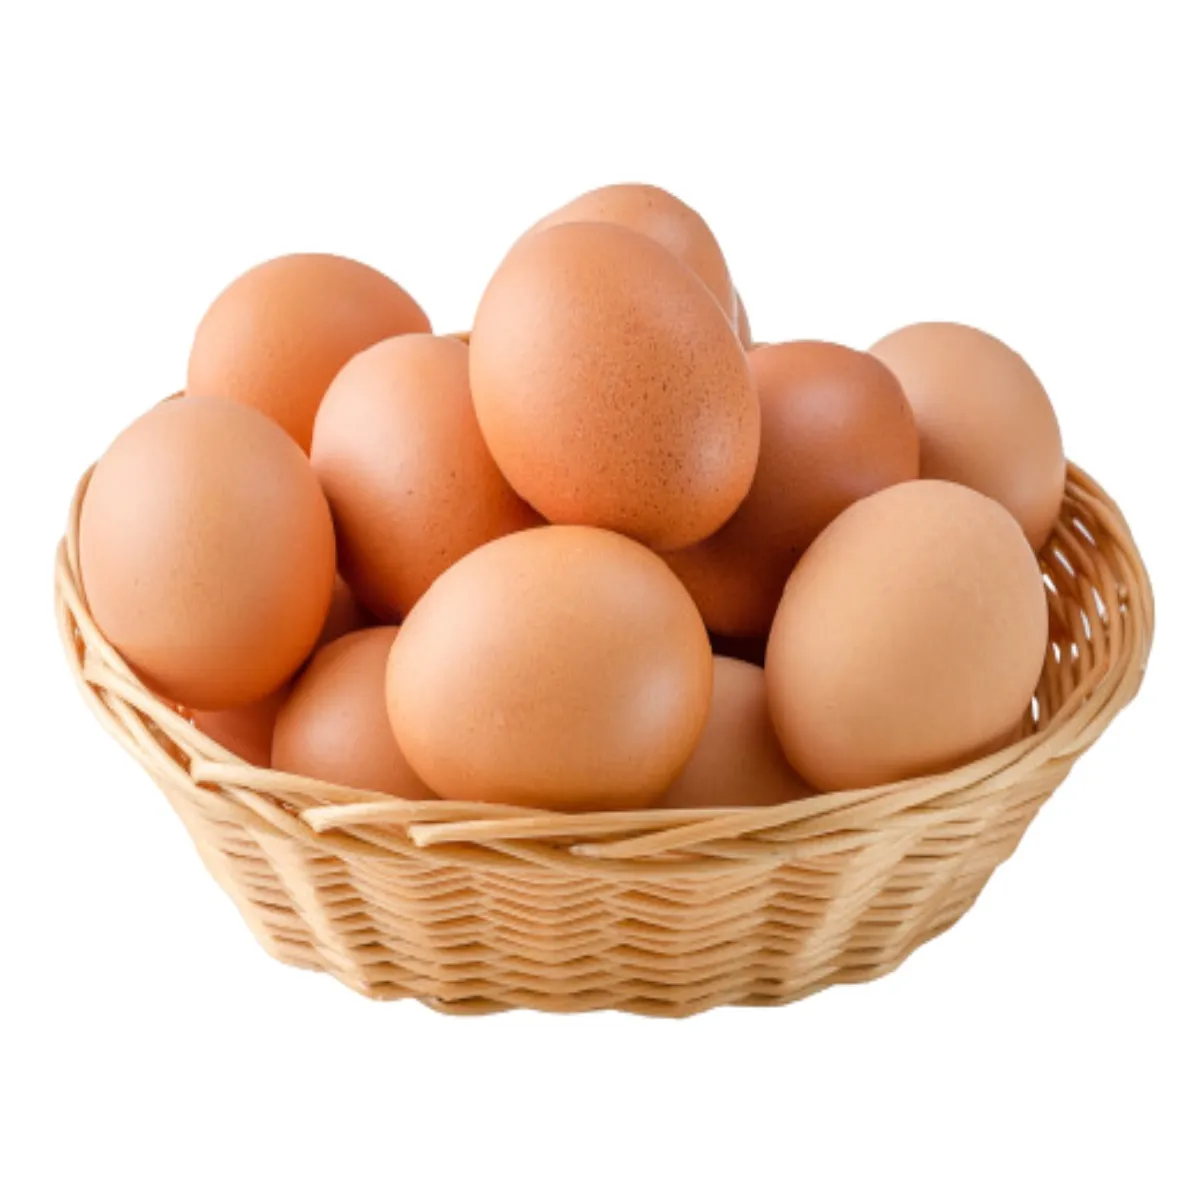 কান্ট্রি ন্যাচারাল ডিম (Country Natural Egg)